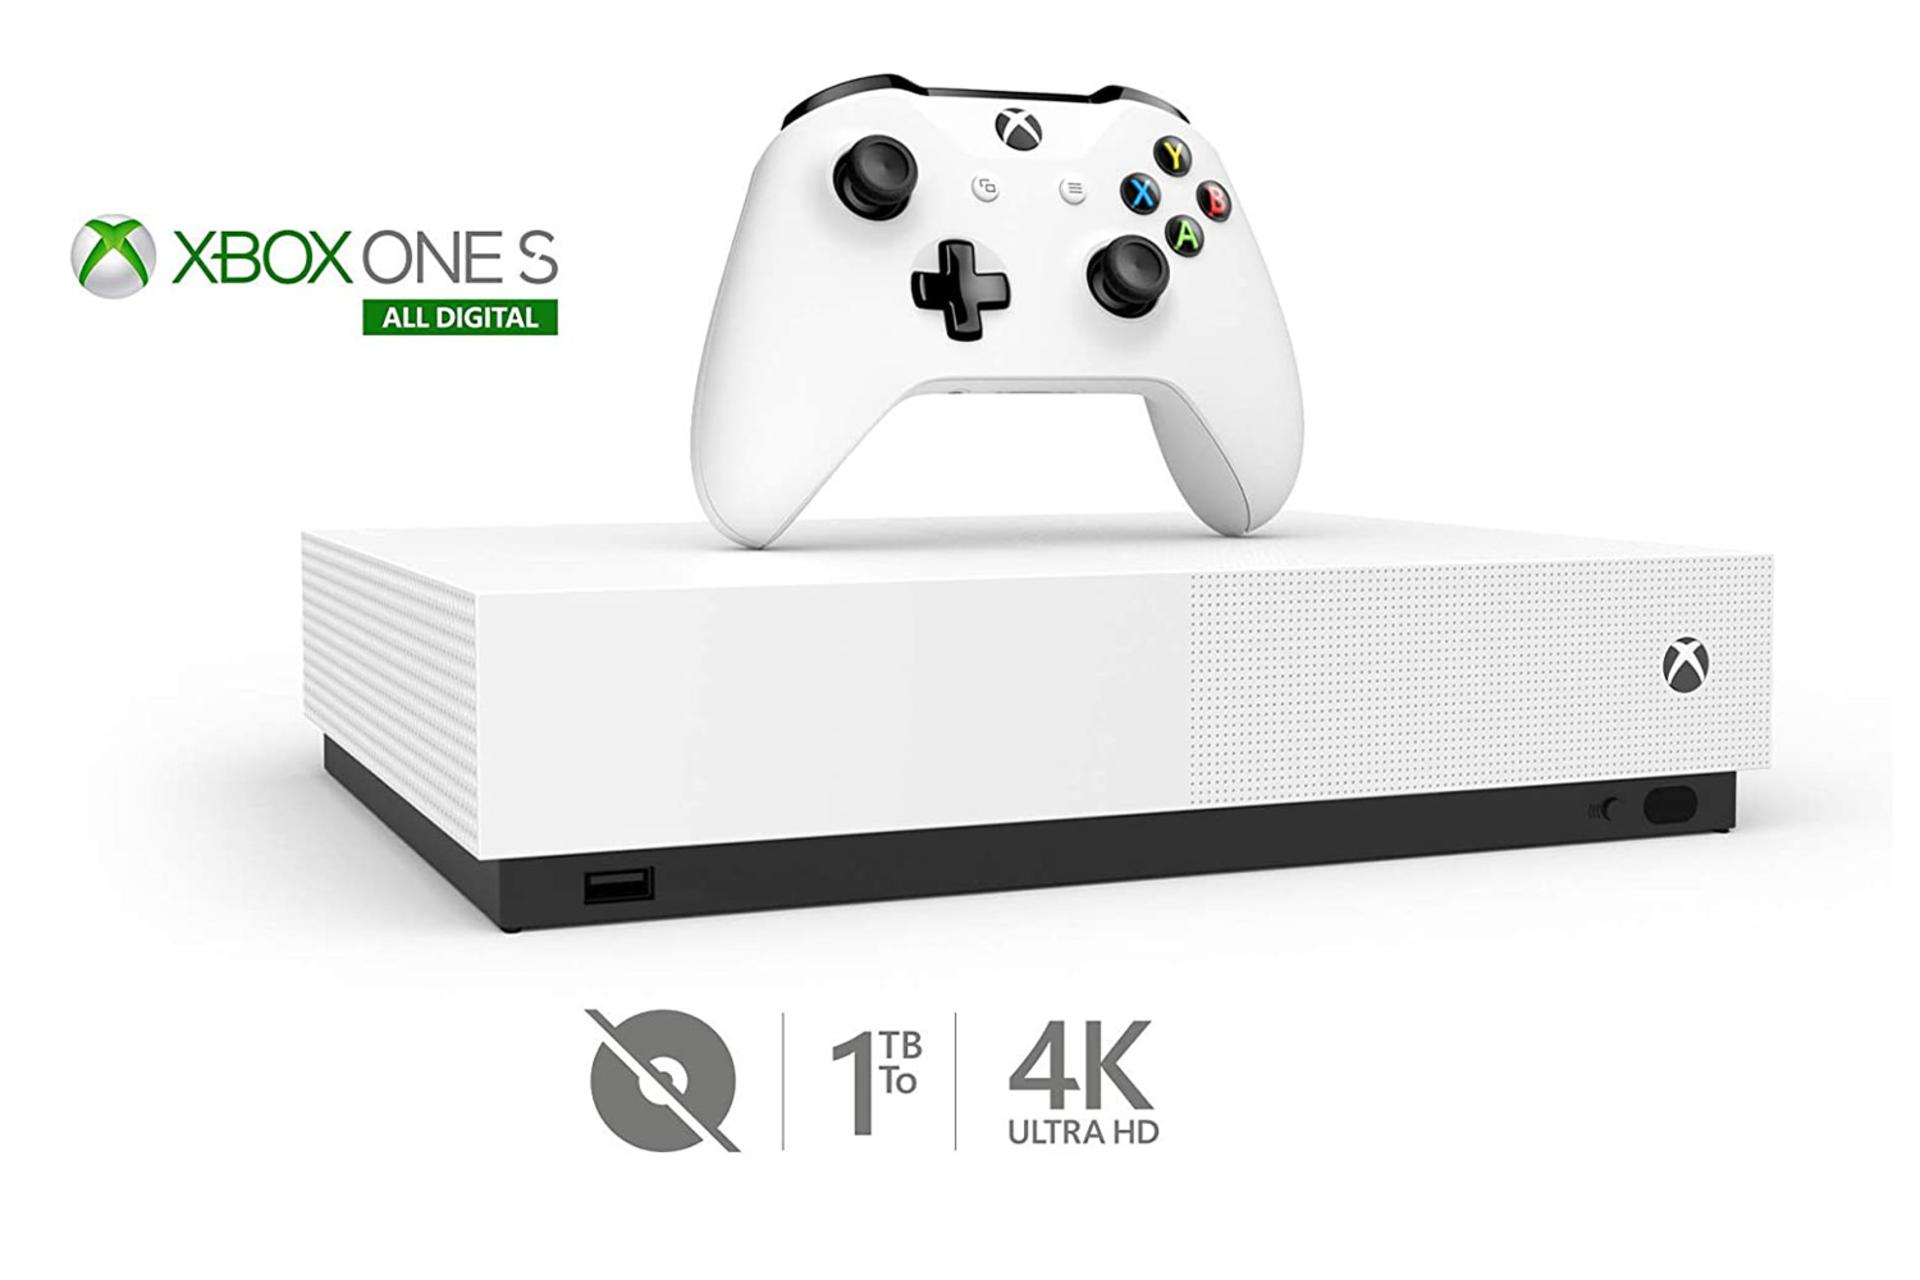 مرجع متخصصين ايران كنسول مايكروسافت ايكس باكس وان اس مدل ديجيتال - نماي جلو و رنگ سفيد با دسته / Xbox One S